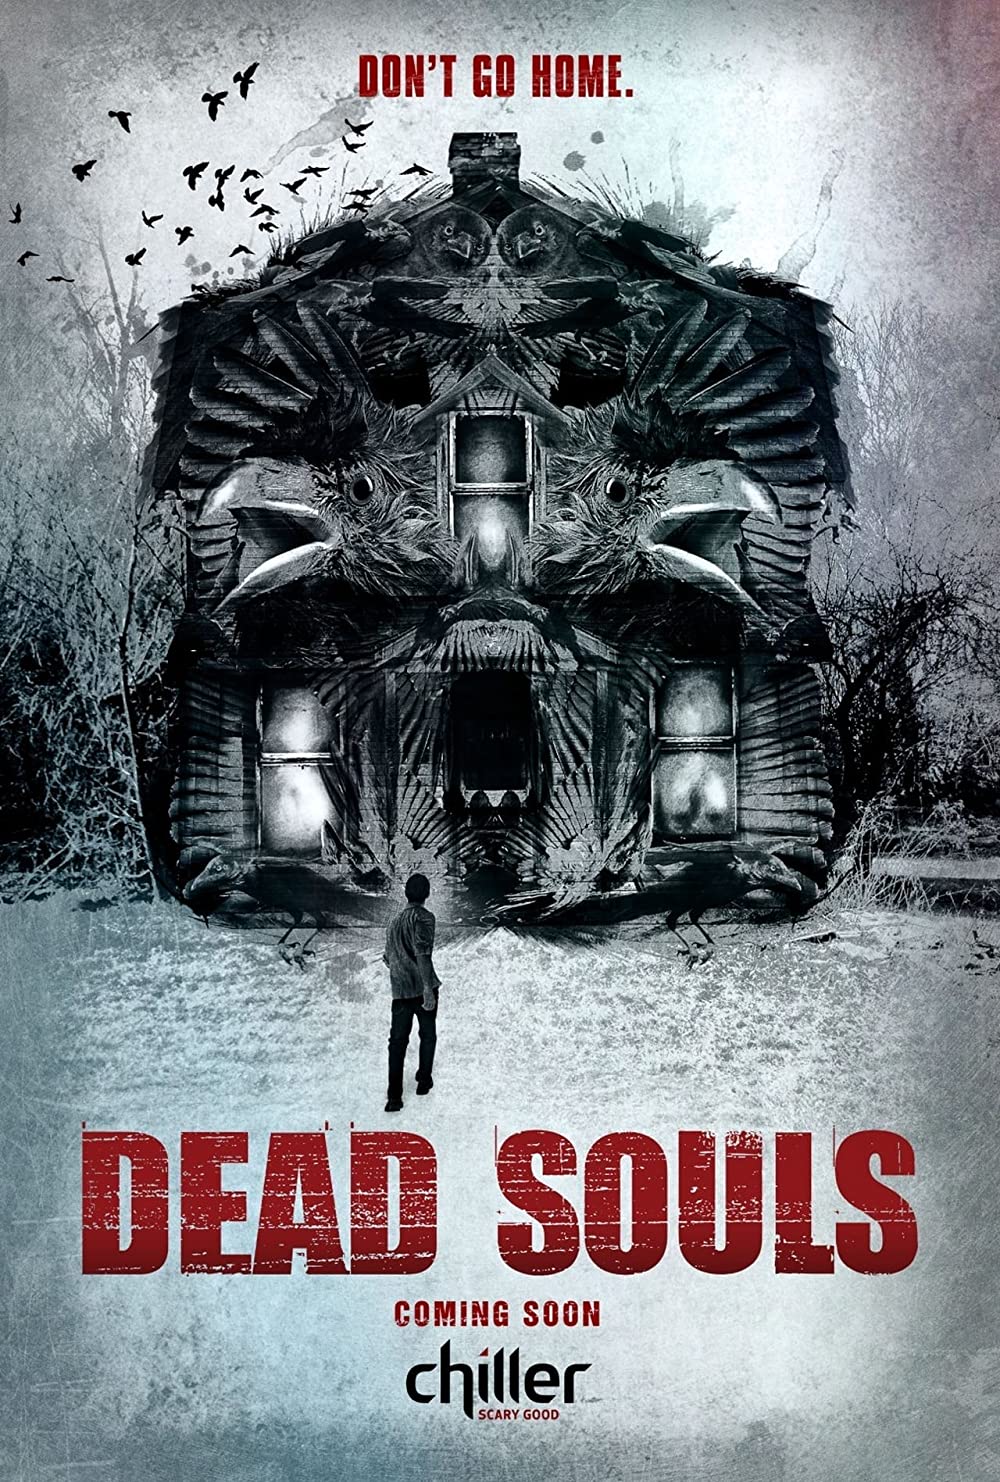 Filmbeschreibung zu Dead Souls